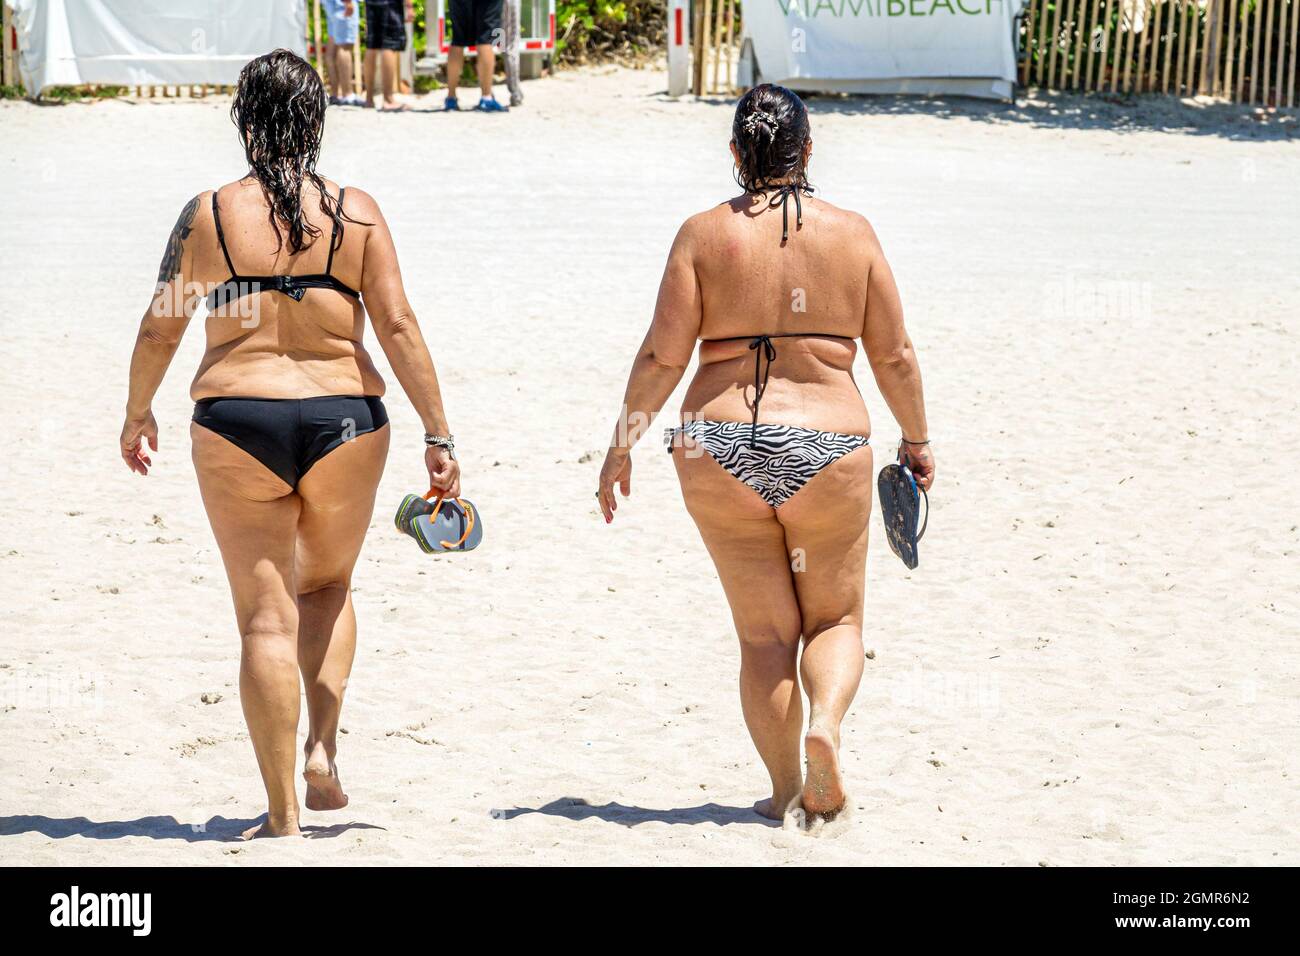 Miami Beach Florida, donne che indossano costumi da bagno bikini, obese grasso sovrappeso pesante a piedi amici Foto Stock